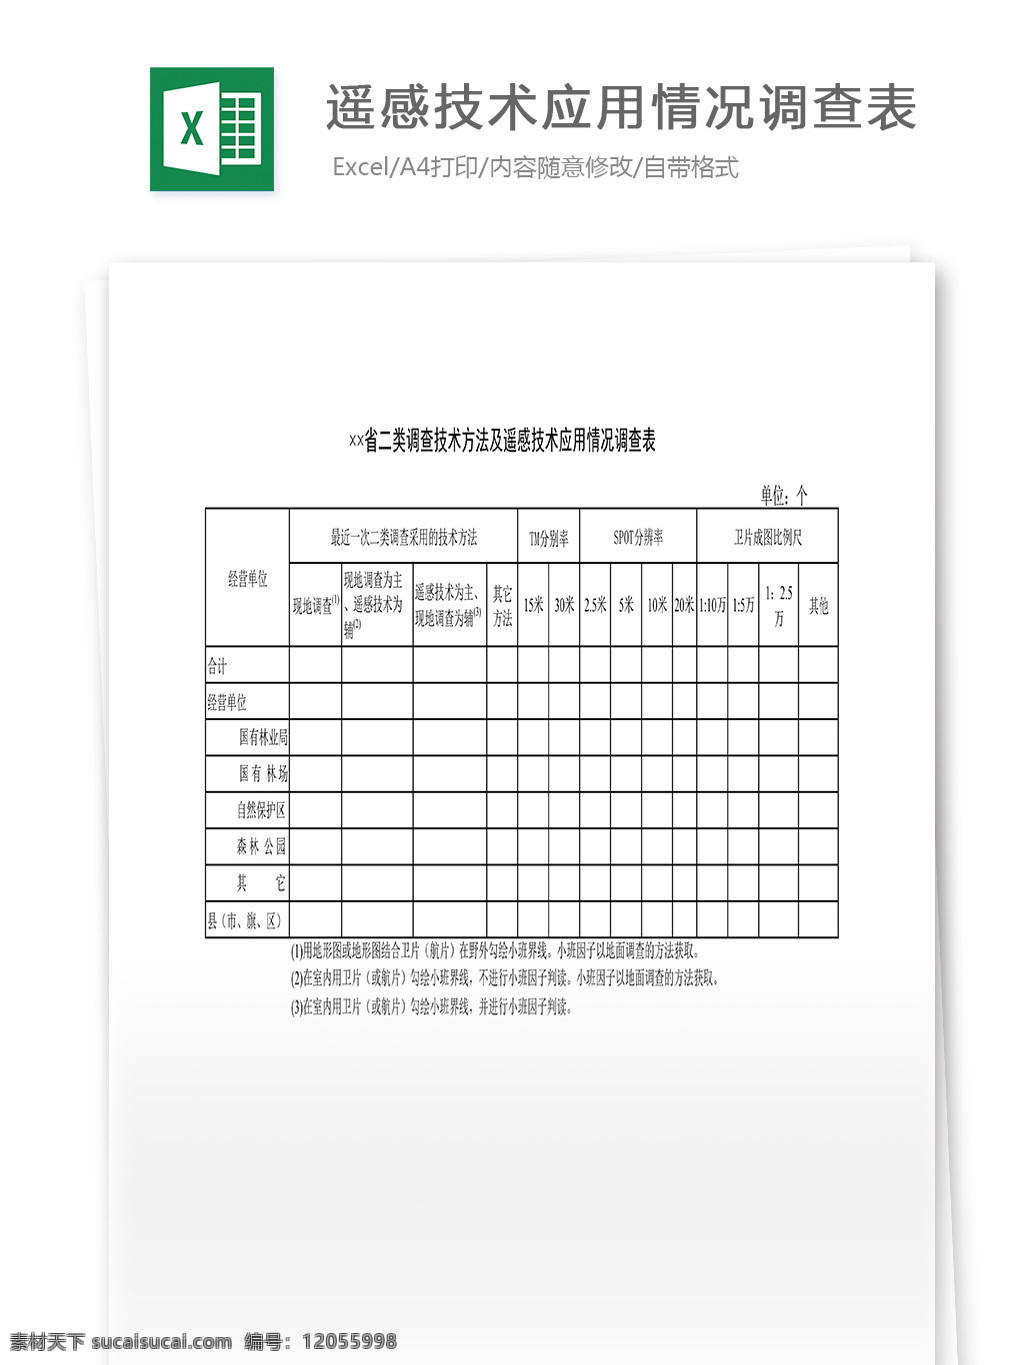 省 二类 调查 技术 方法 遥感 技术应用 情况 调查表 表格 表格模板 表格设计 图表